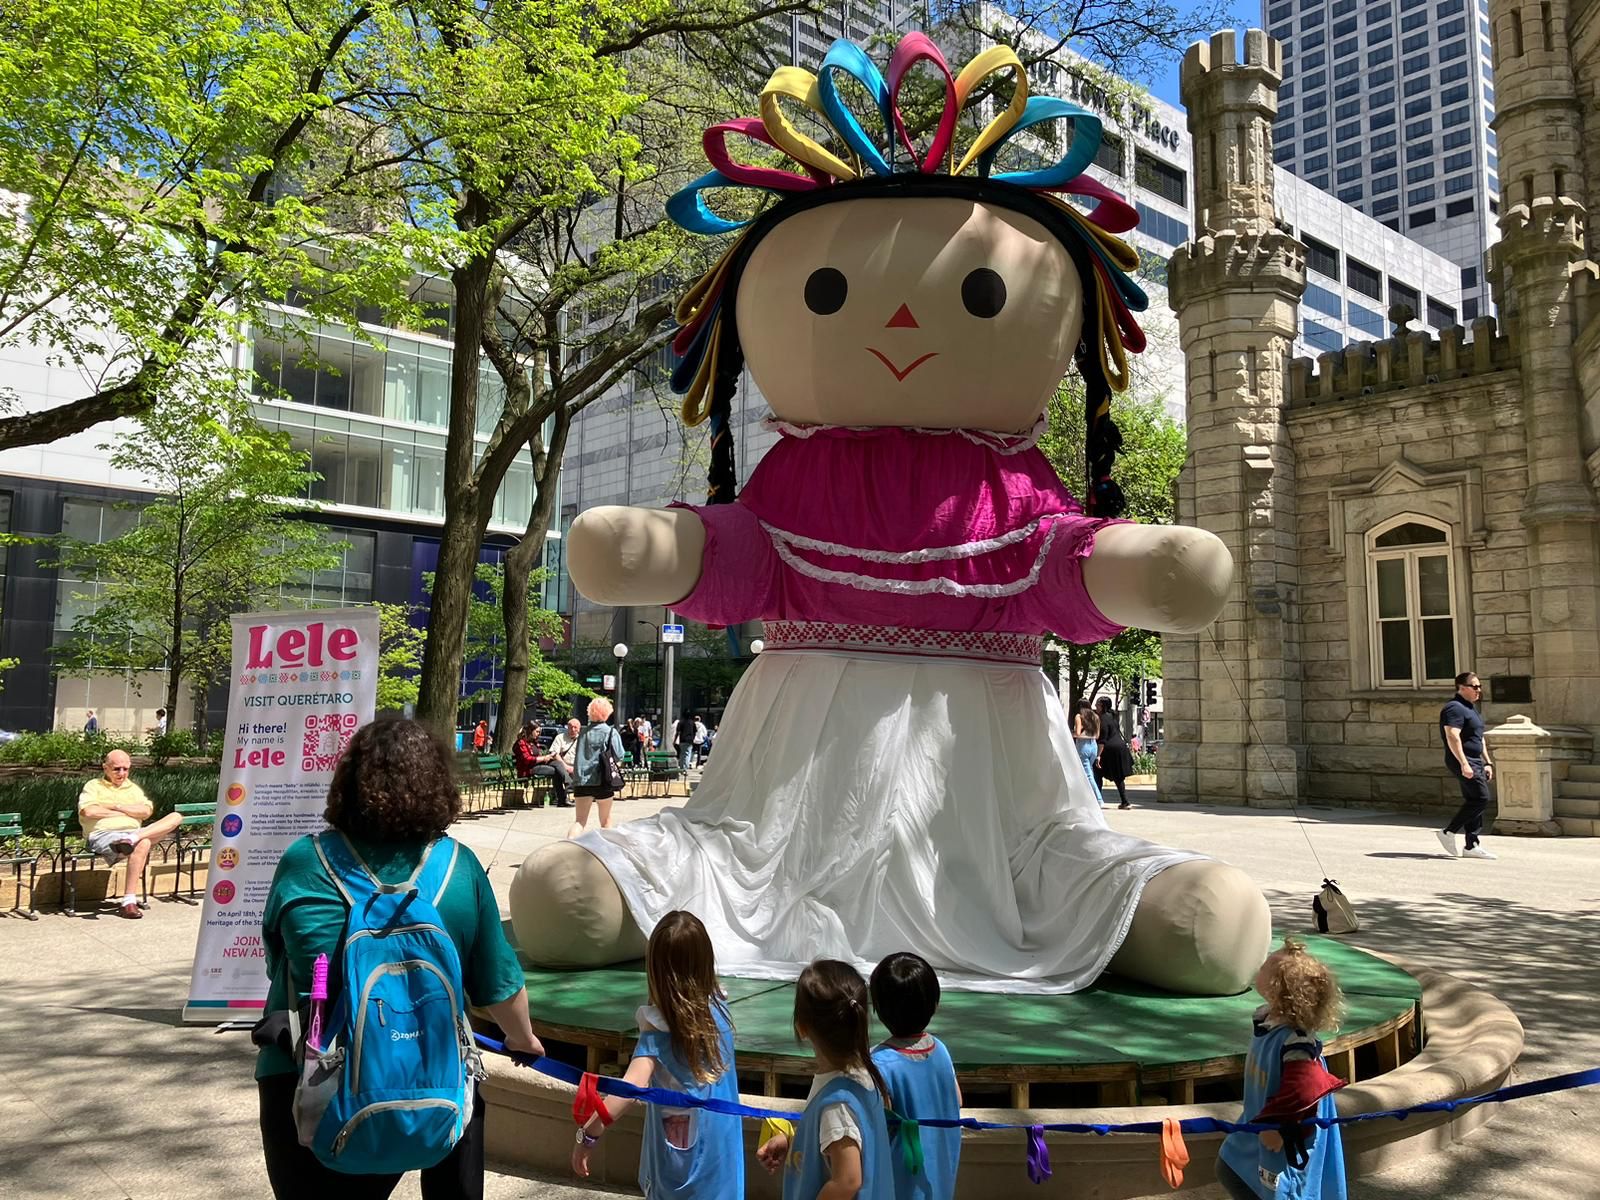 La muñeca Lele visita las calles de Chicago y cautiva a los visitantes